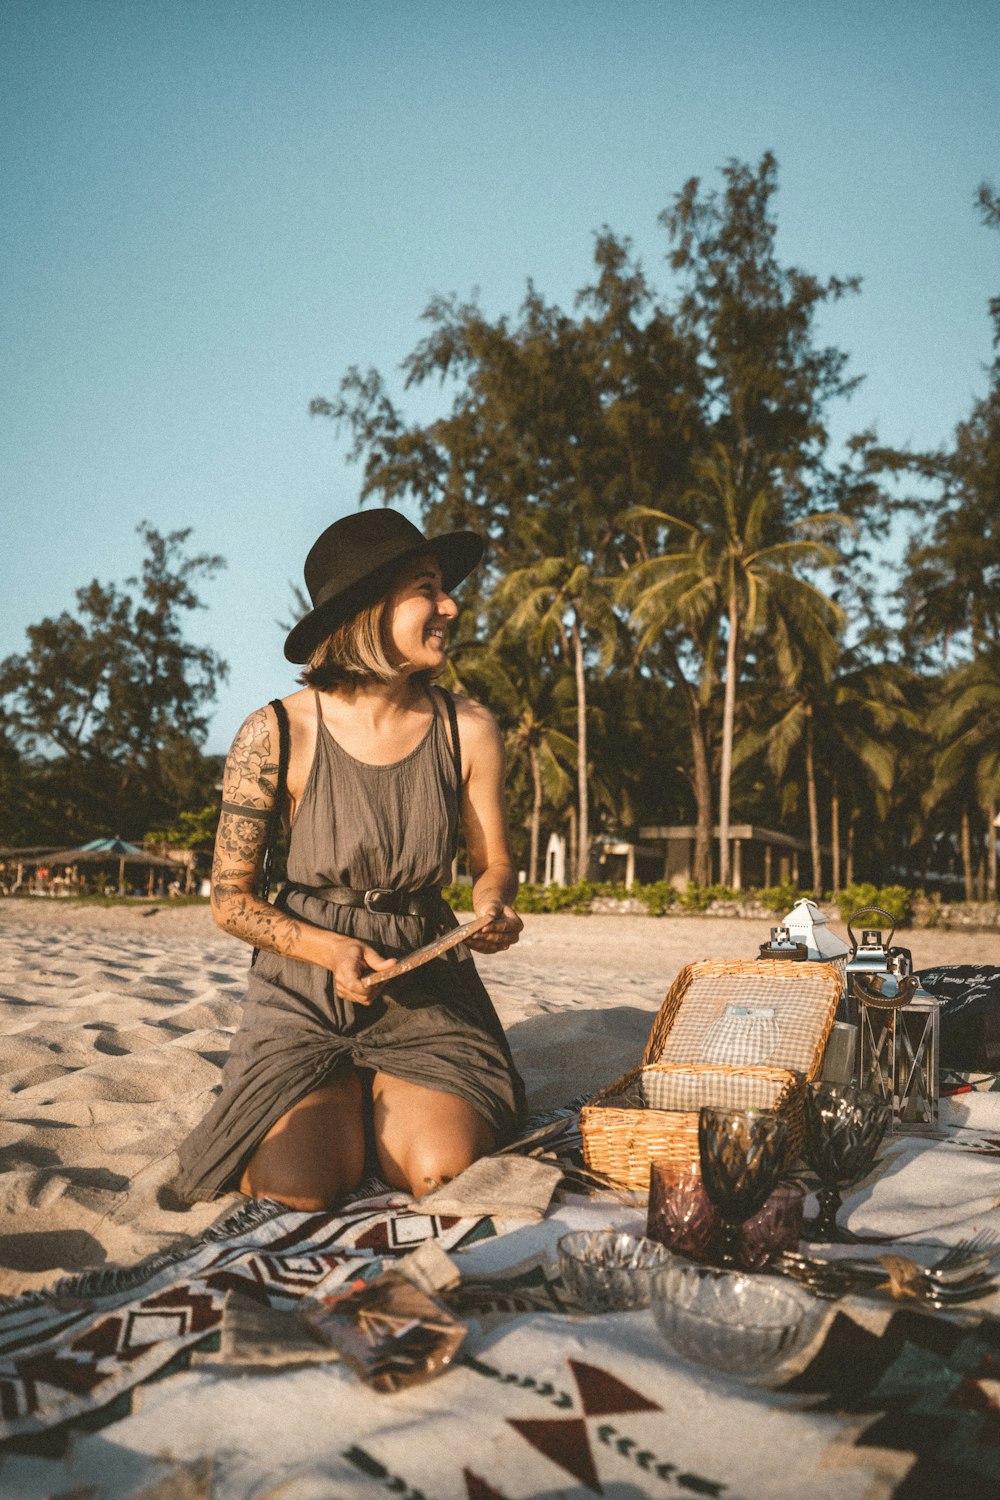 donna in camicia marrone e gonna nera seduta sulla sedia tessuta marrone sulla spiaggia durante il giorno